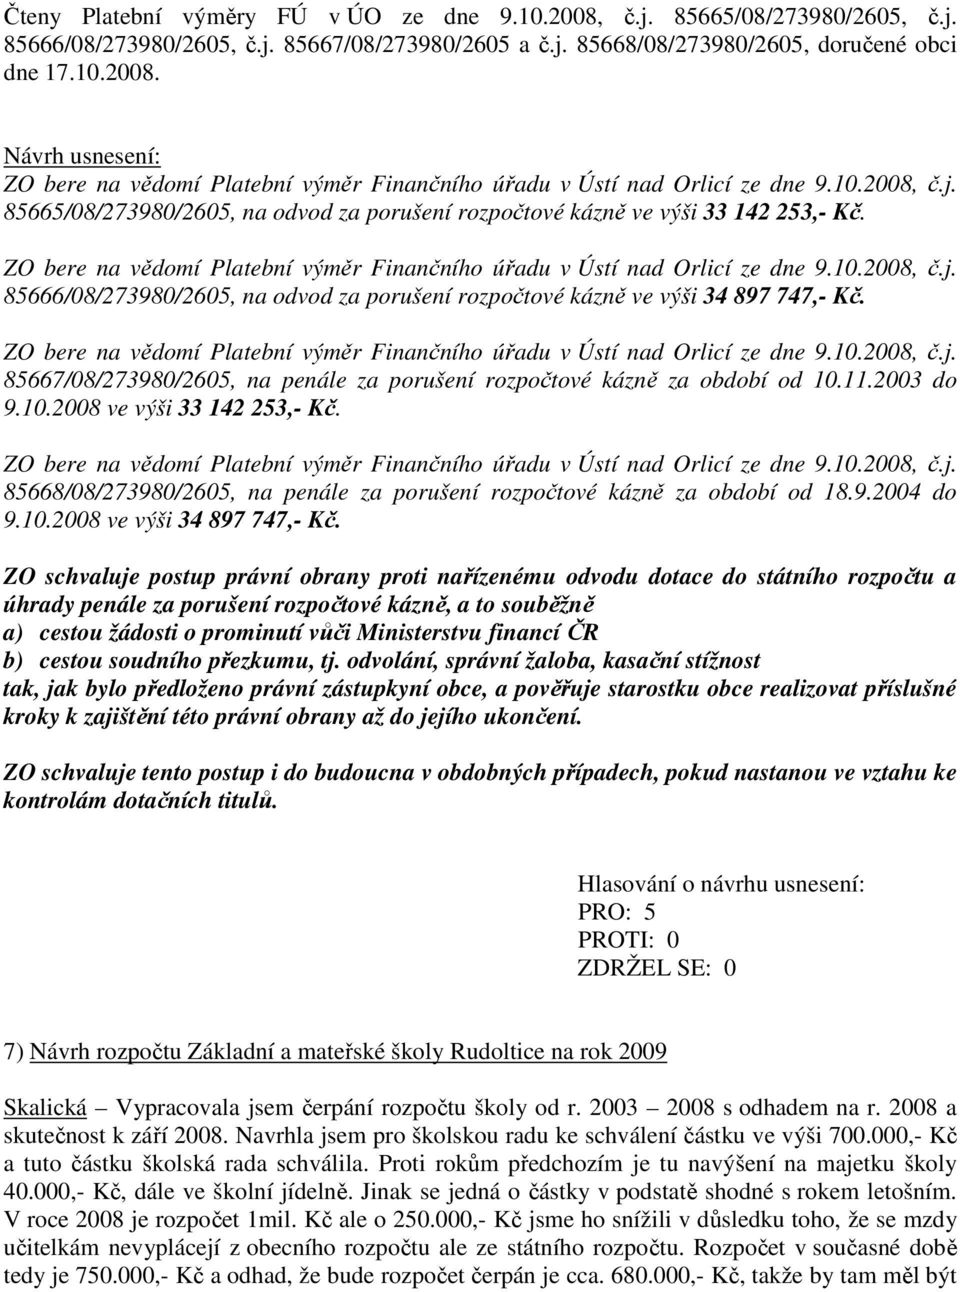 ZO bere na vědomí Platební výměr Finančního úřadu v Ústí nad Orlicí ze dne 9.10.2008, č.j. 85667/08/273980/2605, na penále za porušení rozpočtové kázně za období od 10.11.2003 do 9.10.2008 ve výši 33 142 253,- Kč.